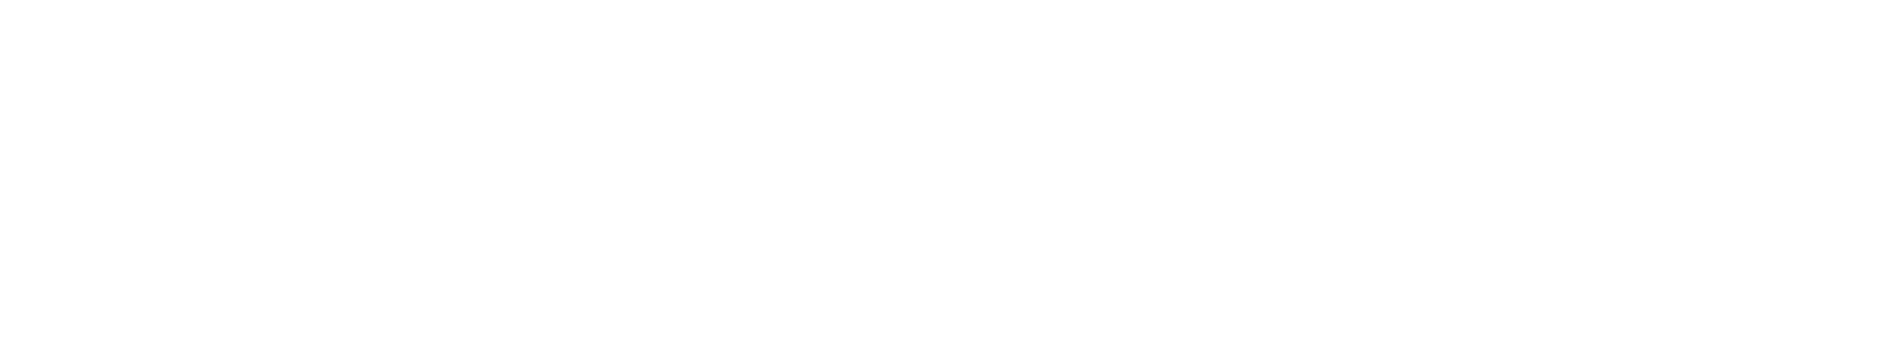 Logo: NÚKIB